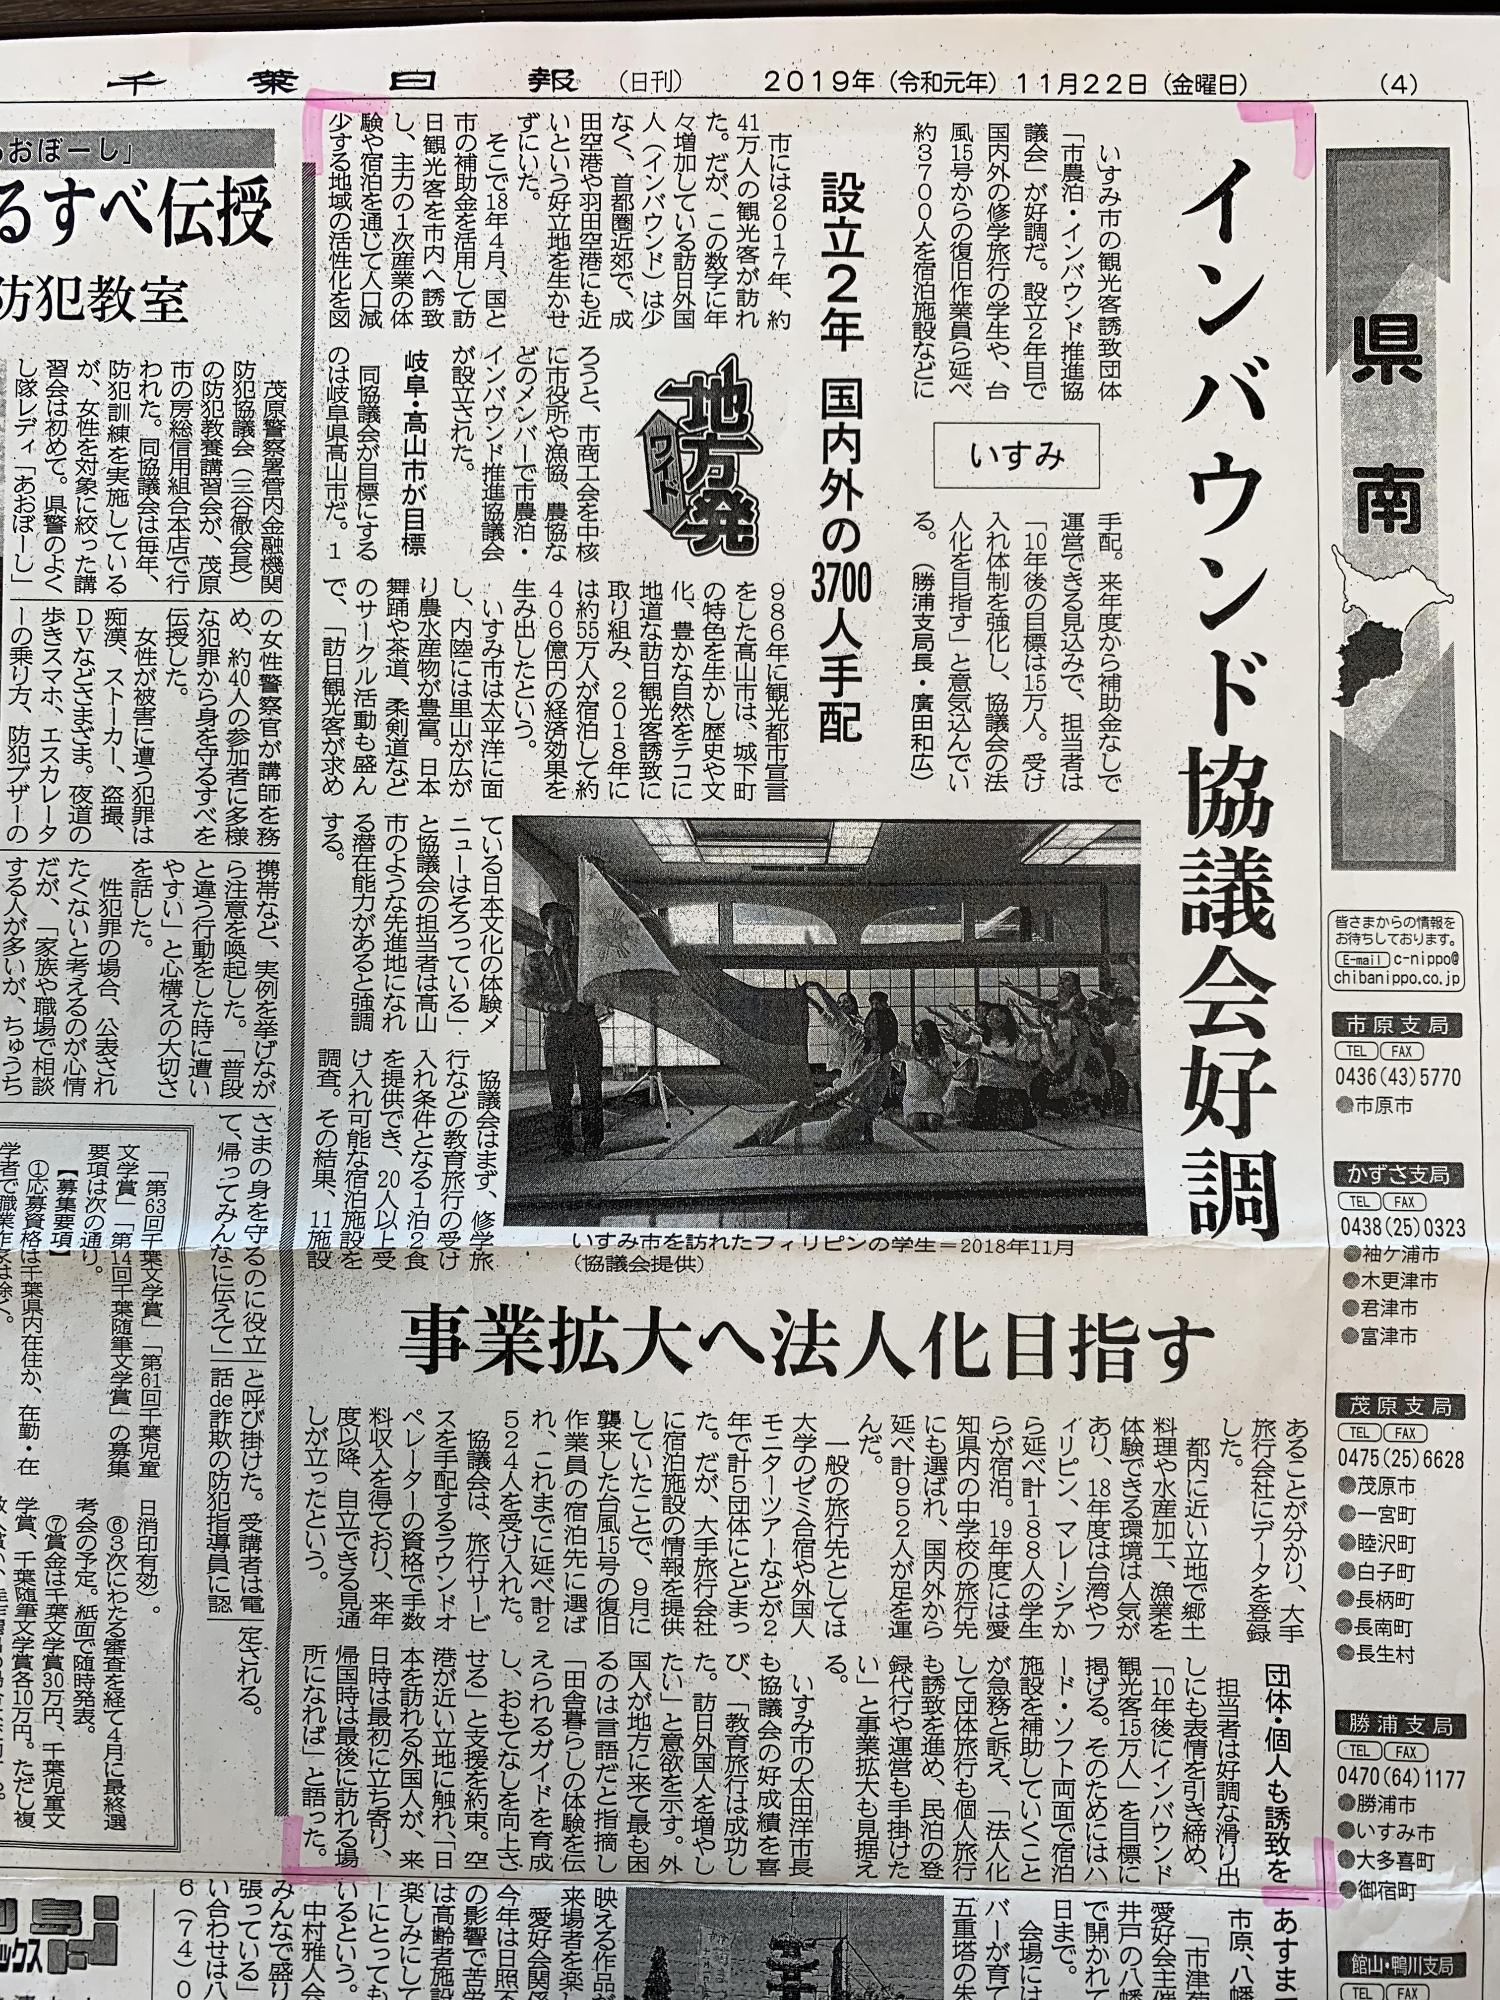 千葉日報に取り上げられた記事を示した新聞紙面の写真